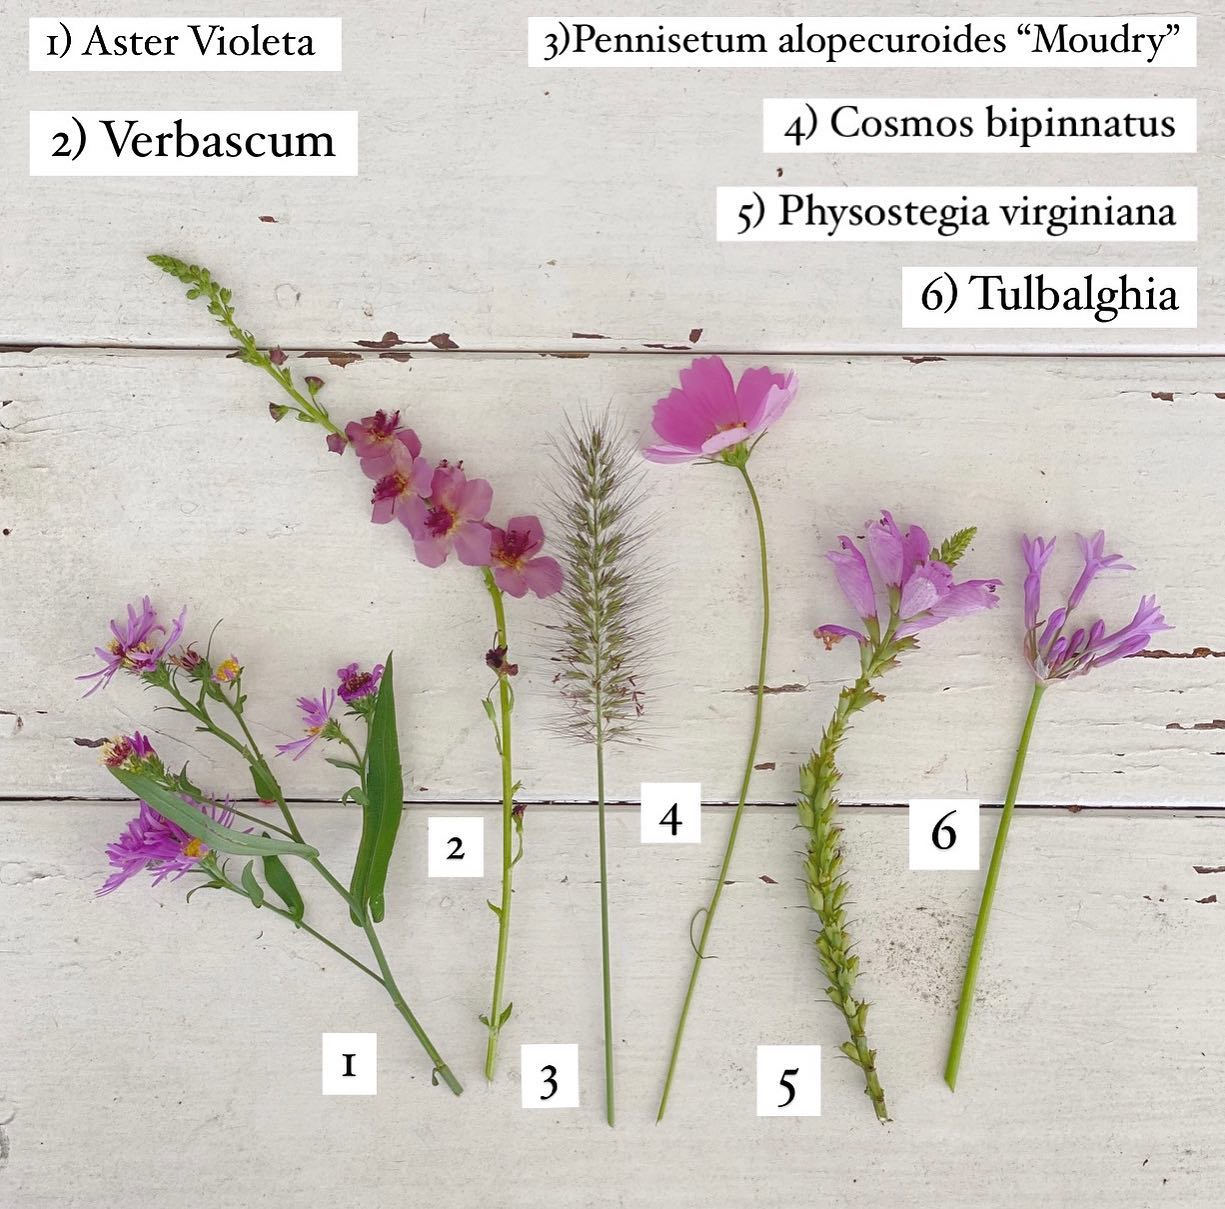 6 plantas con flor violeta, ideales para decorar con elegancia y delicadeza  el jardín – Revista Para Ti